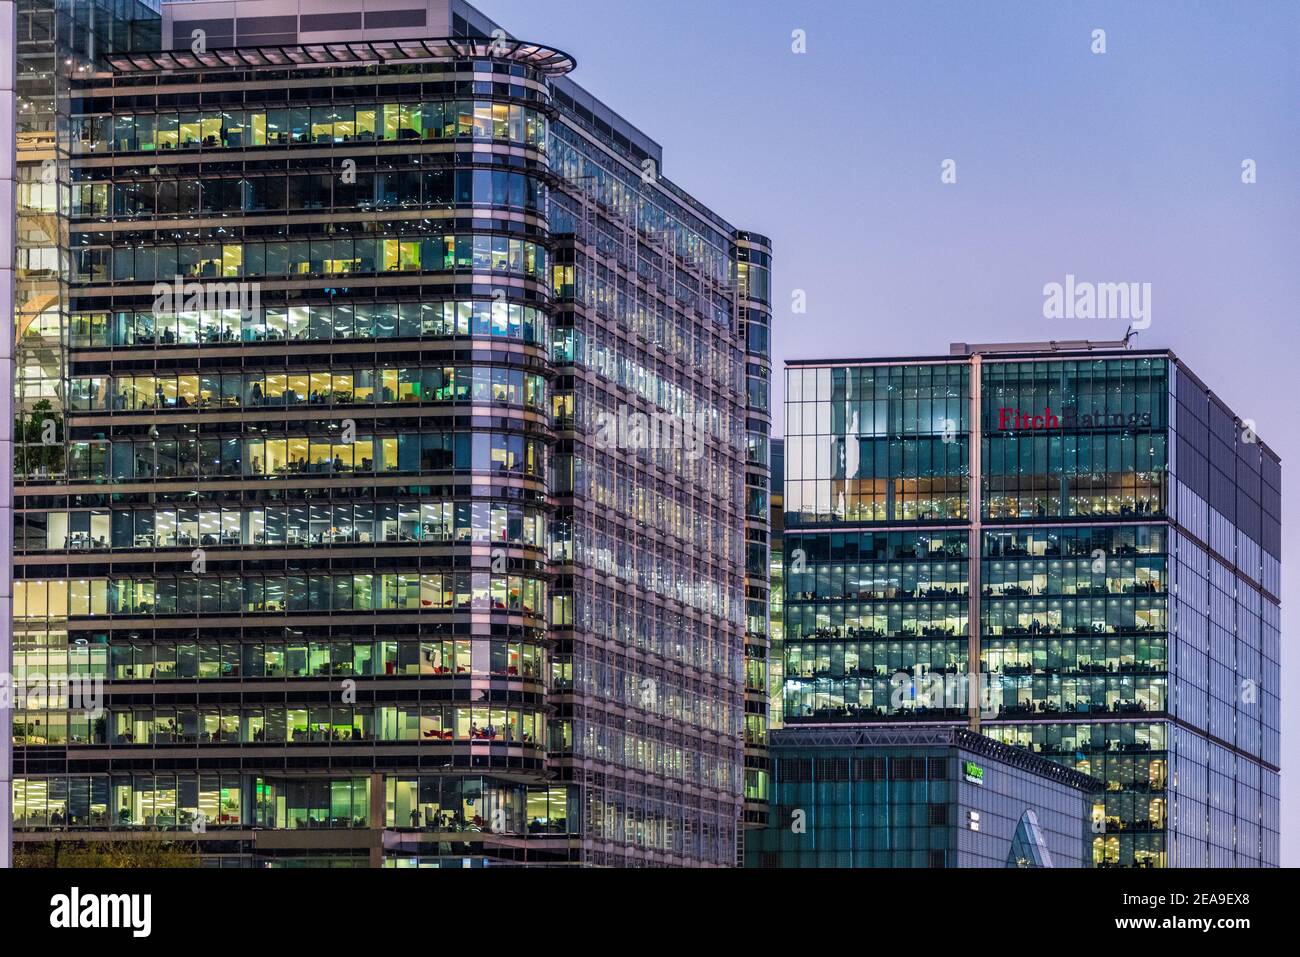 Canary Wharf London - sur la gauche, 20 bureaux de BP & S&P Global sur la place du Canada, sur la droite Fitch Ratings au 30 N Colonnade. Banque D'Images